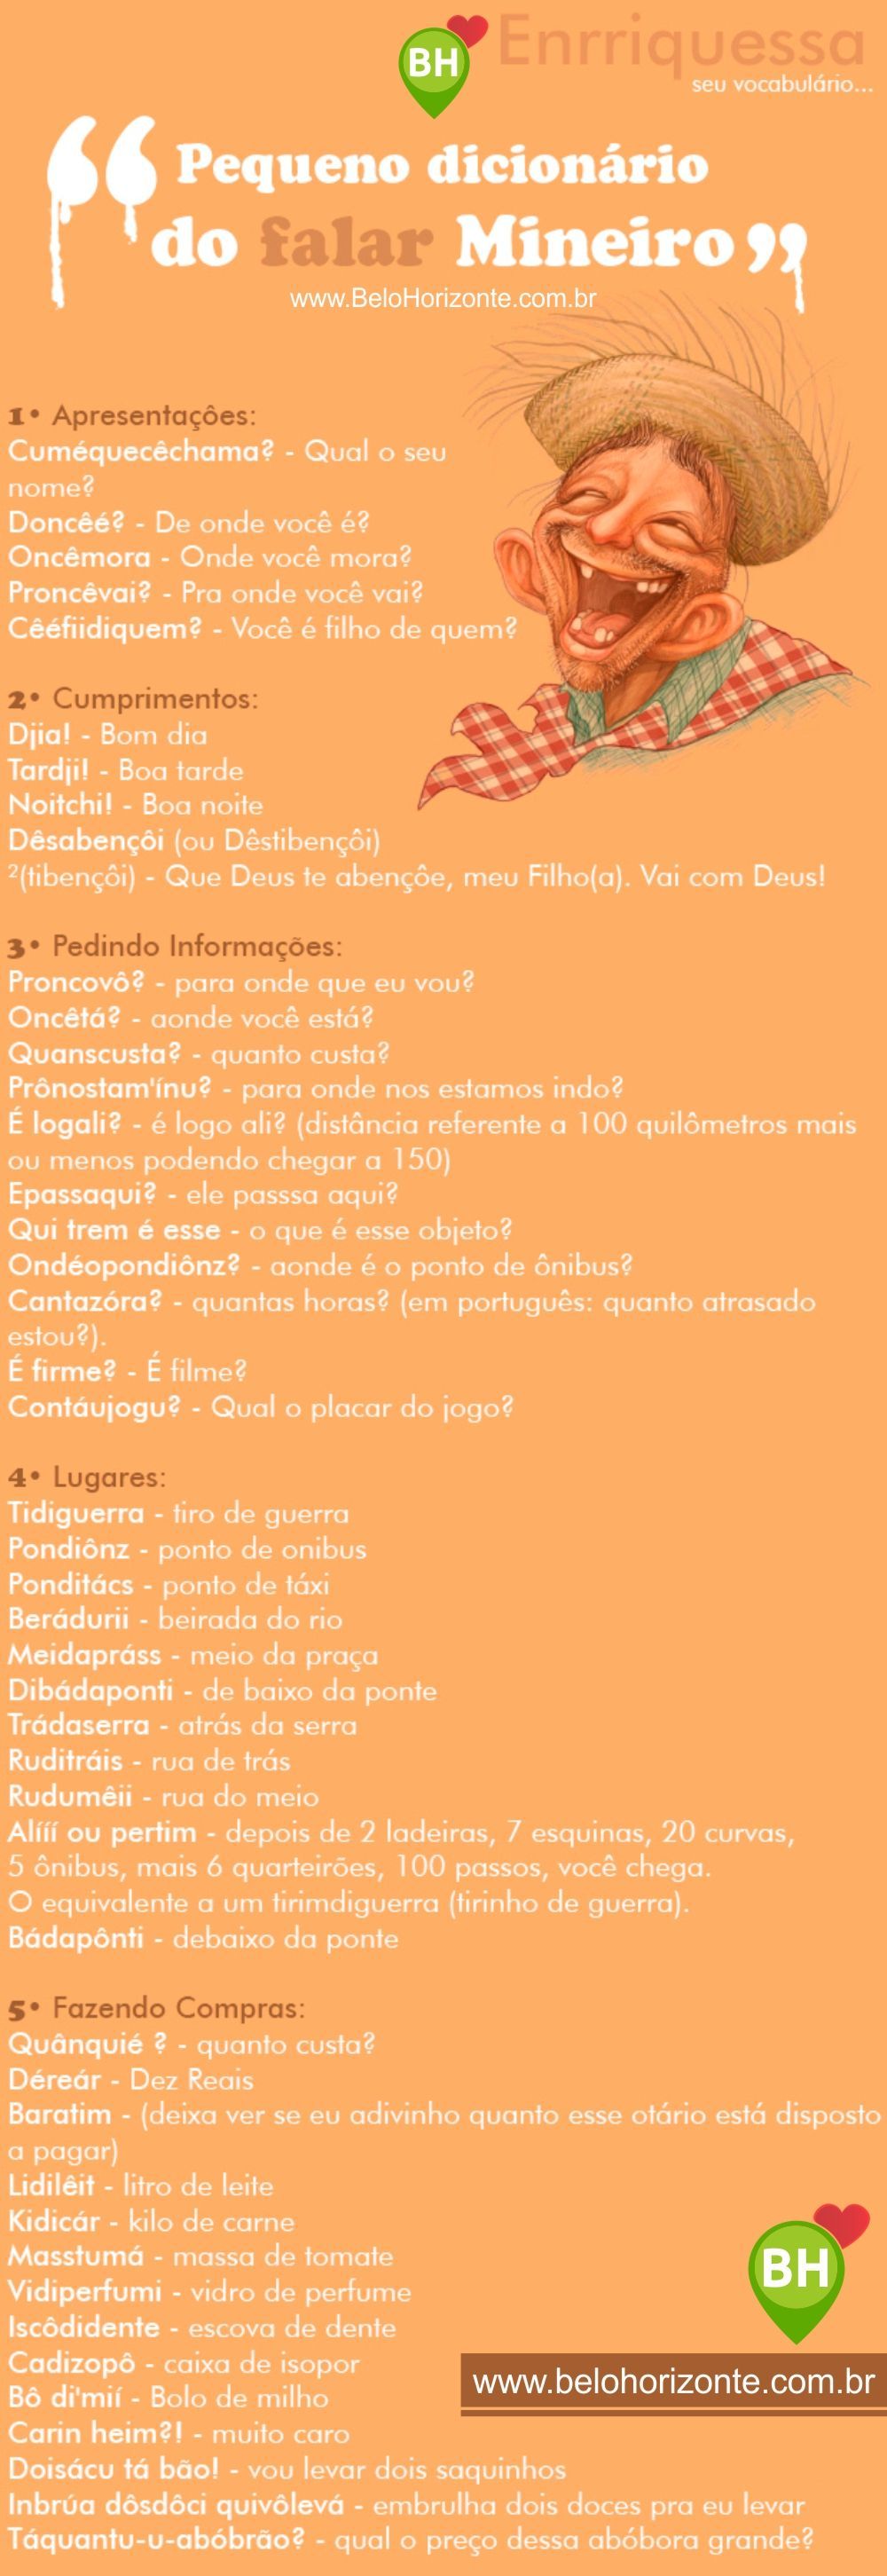 Pequeno dicionário Mineiro - Dicas BH